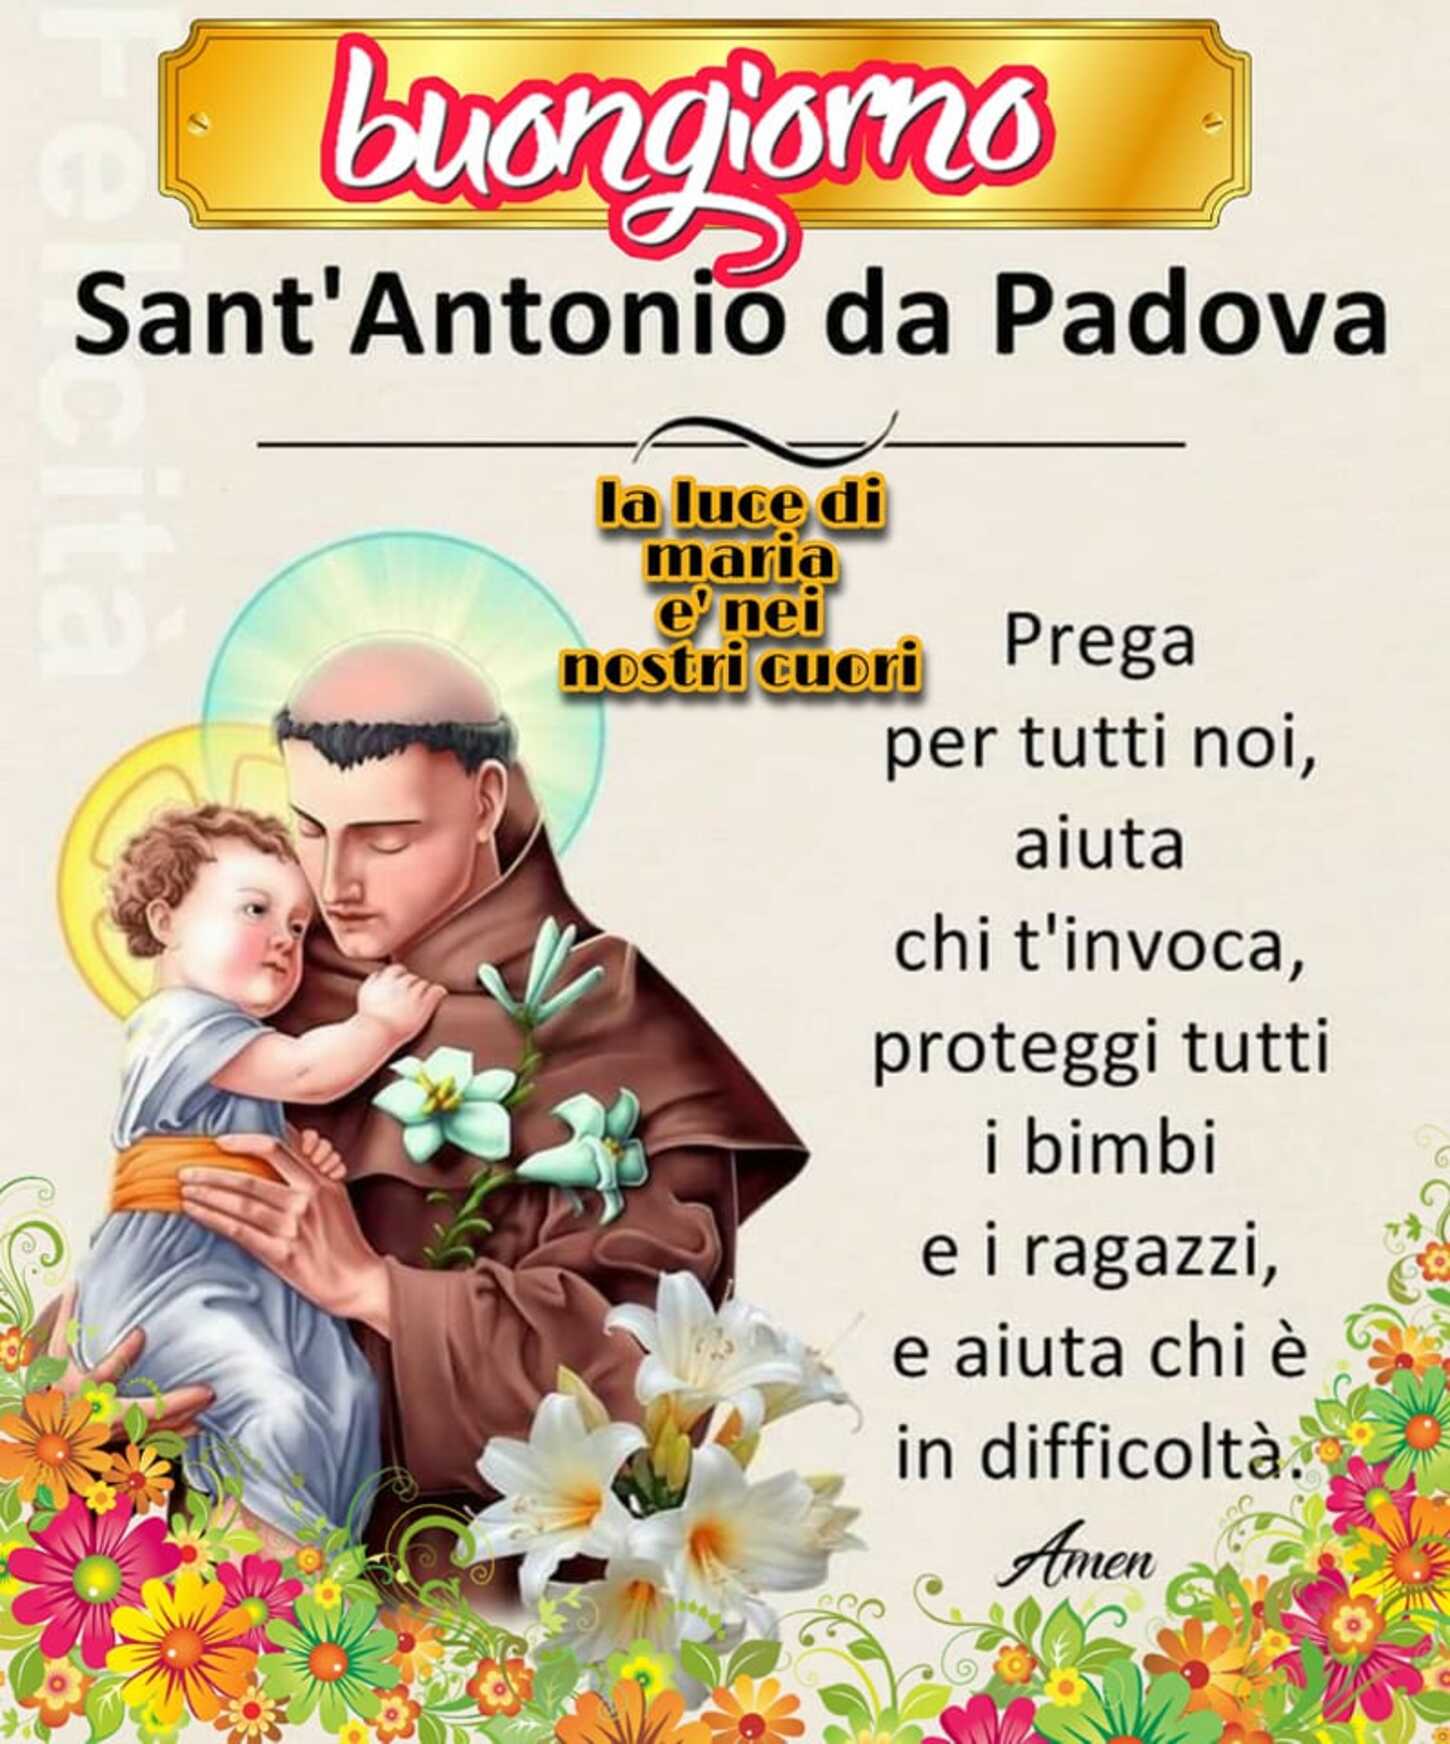 Buongiorno Sant’ Antonio da Padova